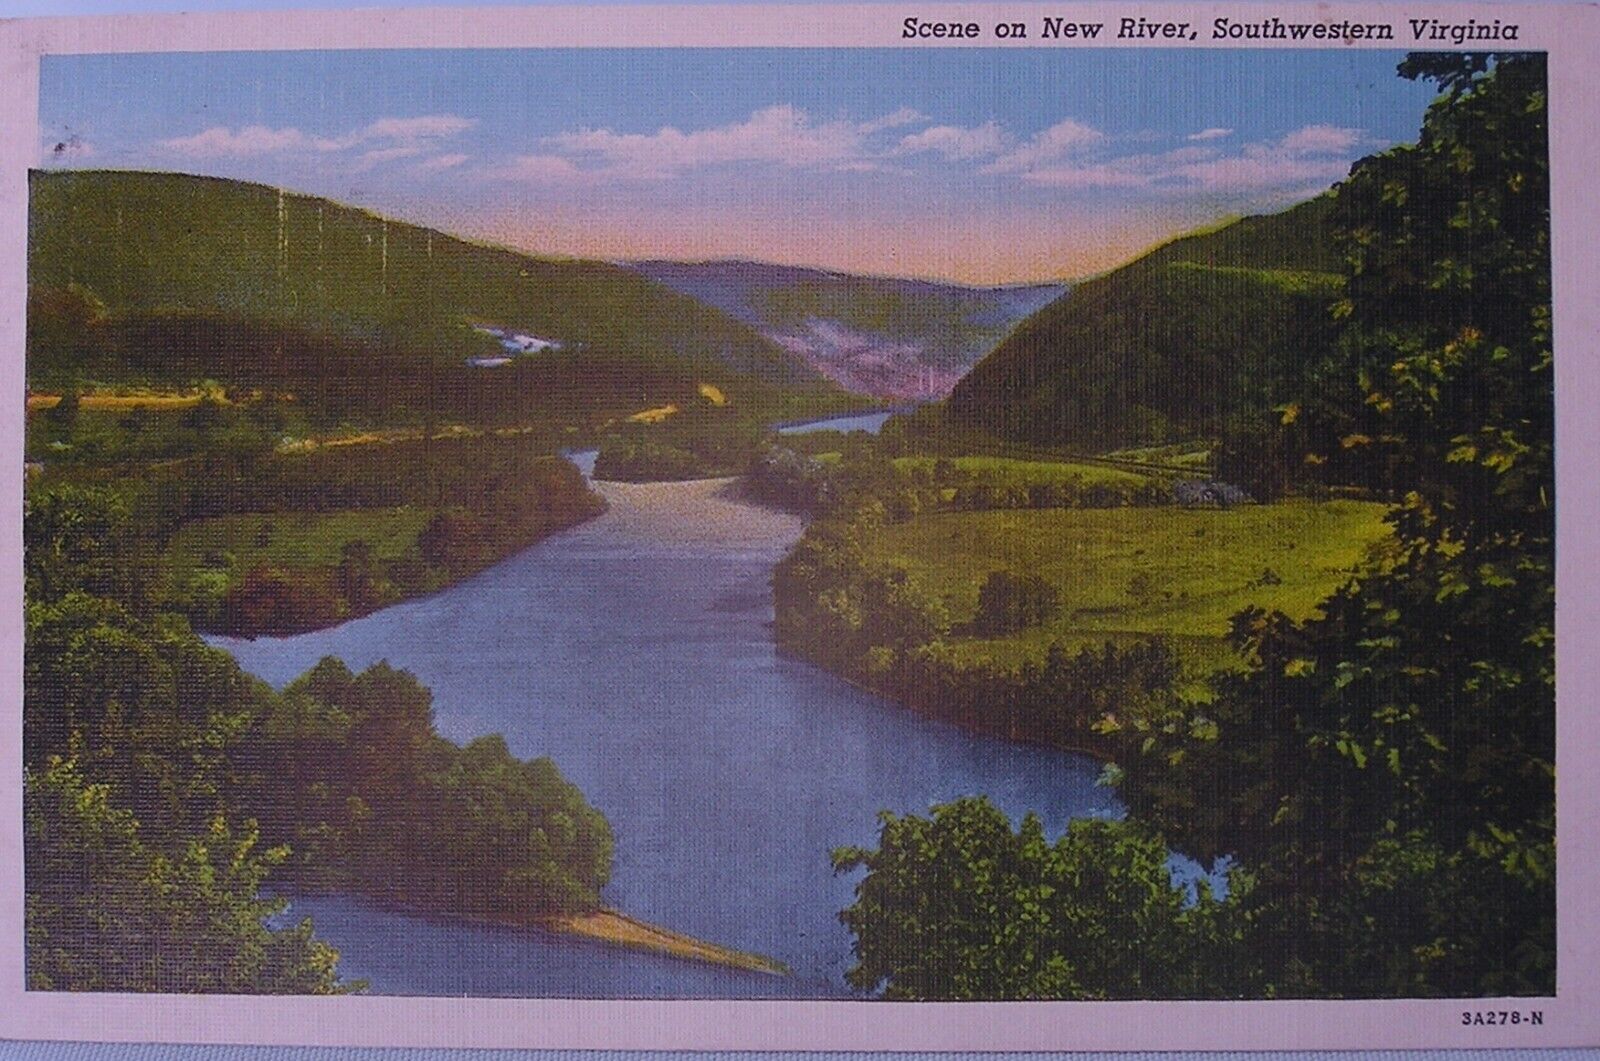 Southwestern Virginia - Scene on New River